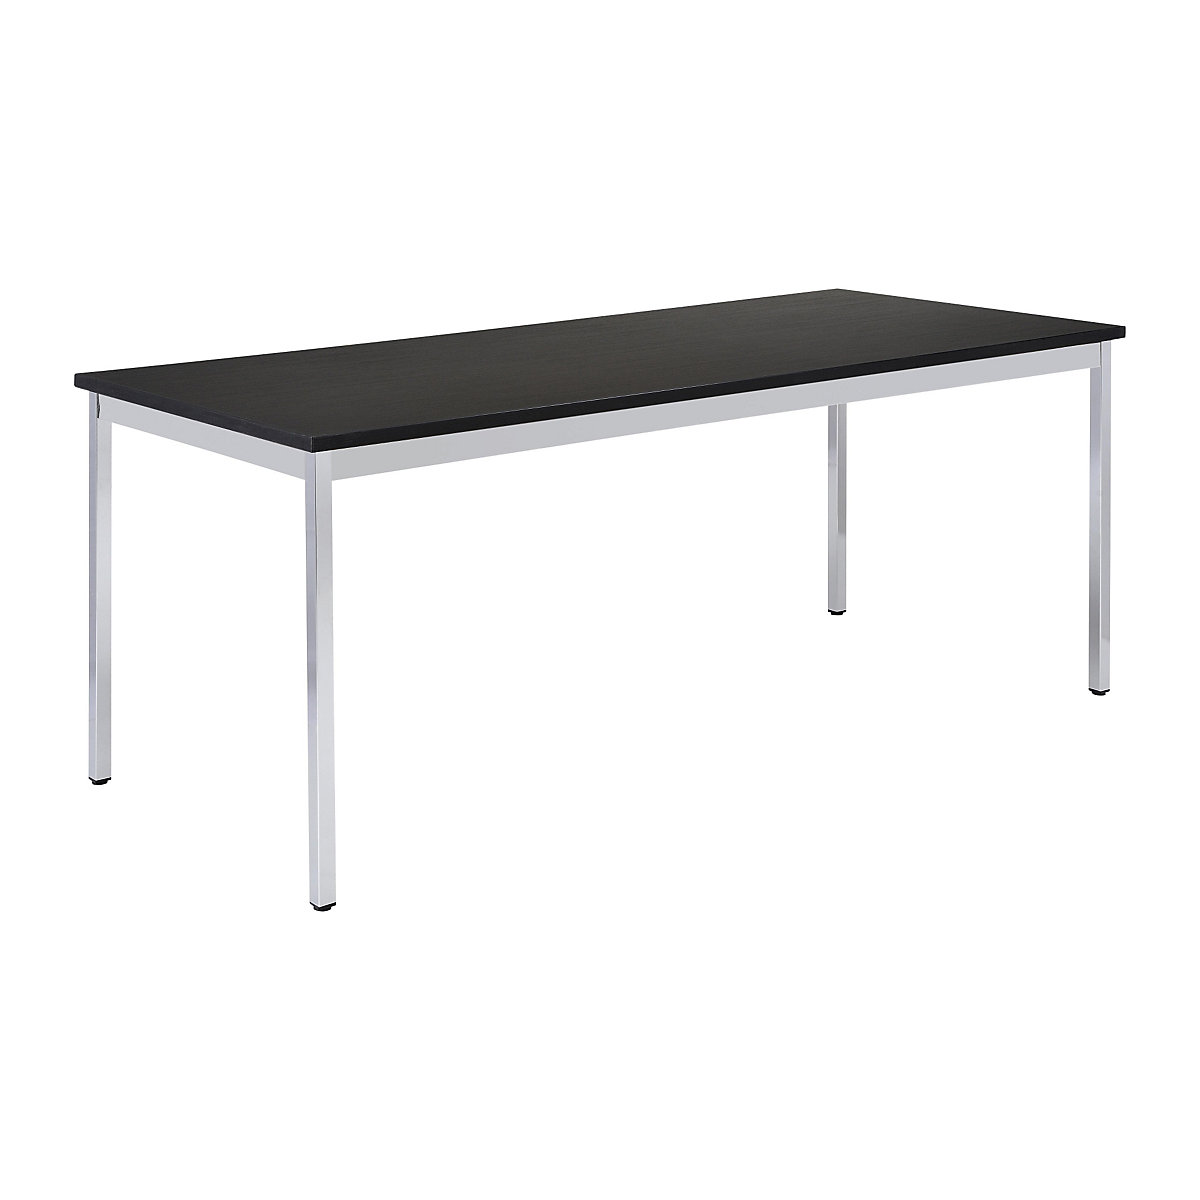 EUROKRAFTbasic – Višenamjenski stol, pravokutna izvedba, ŠxV 1400 x 740 mm, dubina 700 mm, ploča u crnoj boji, kromirano postolje